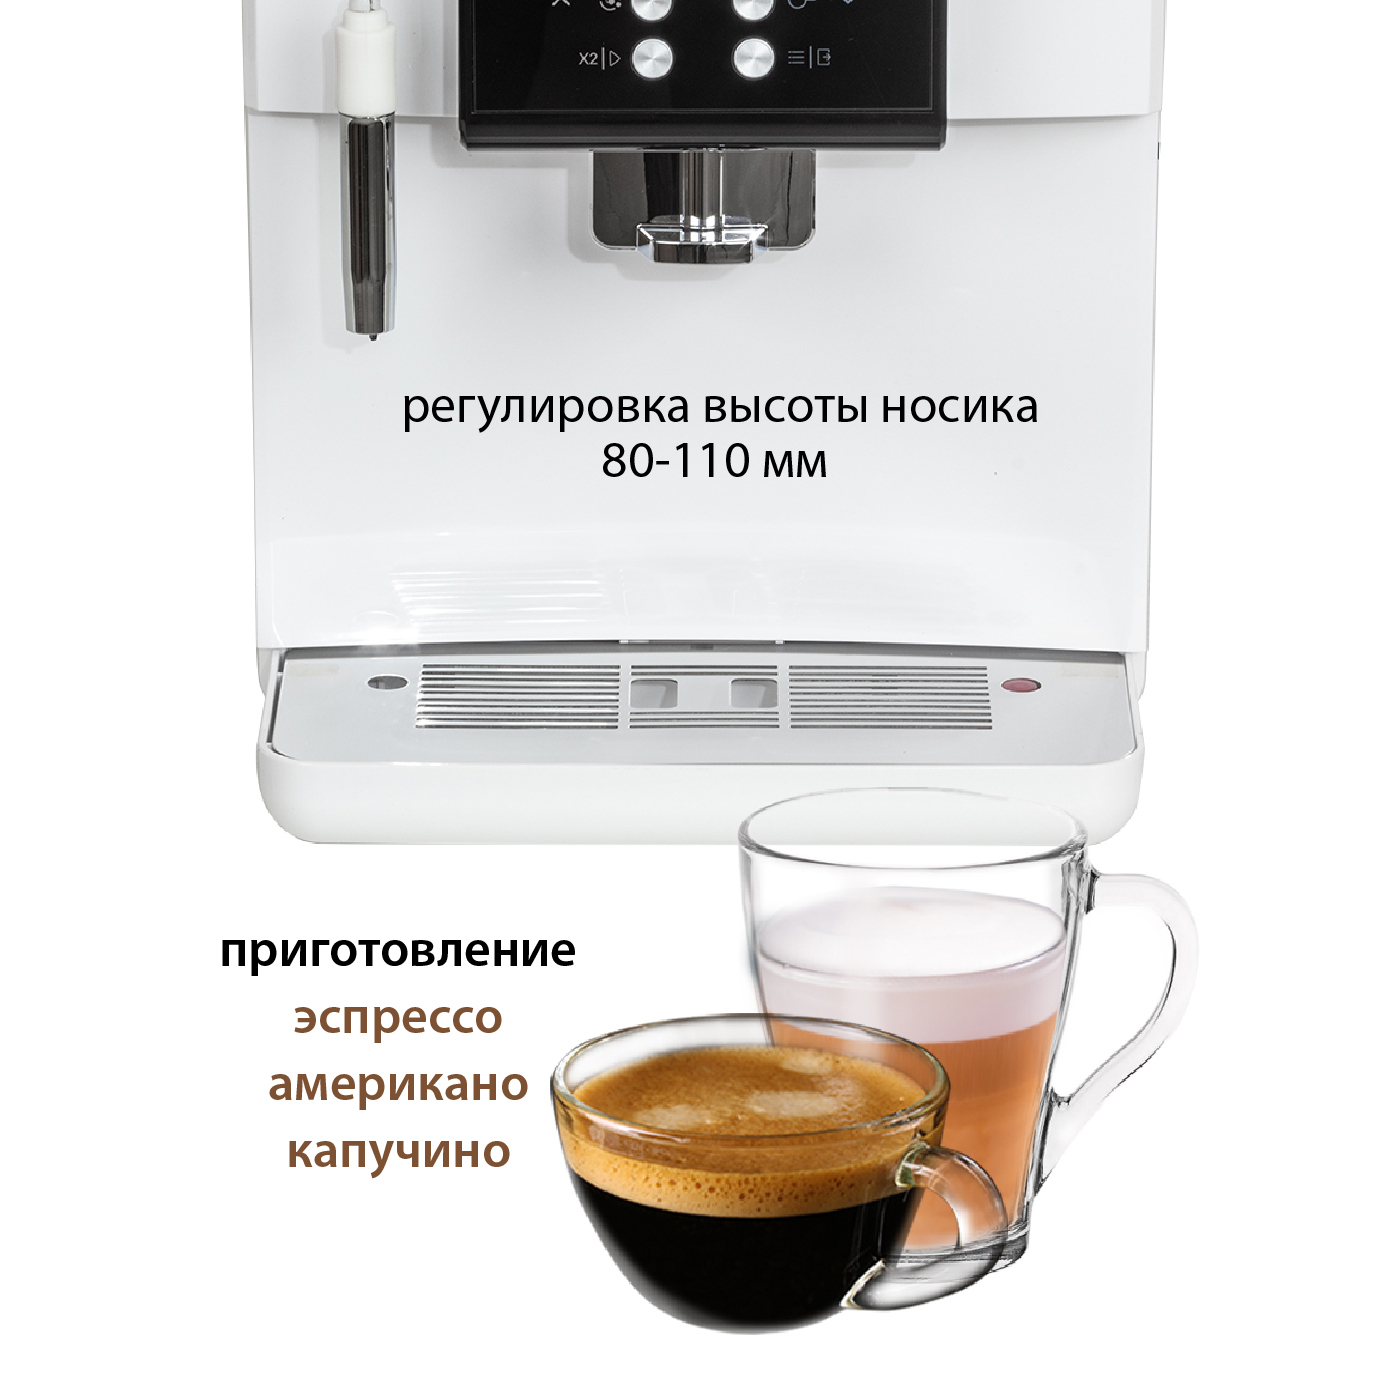 Автоматическая кофемашина Pioneer CMA004